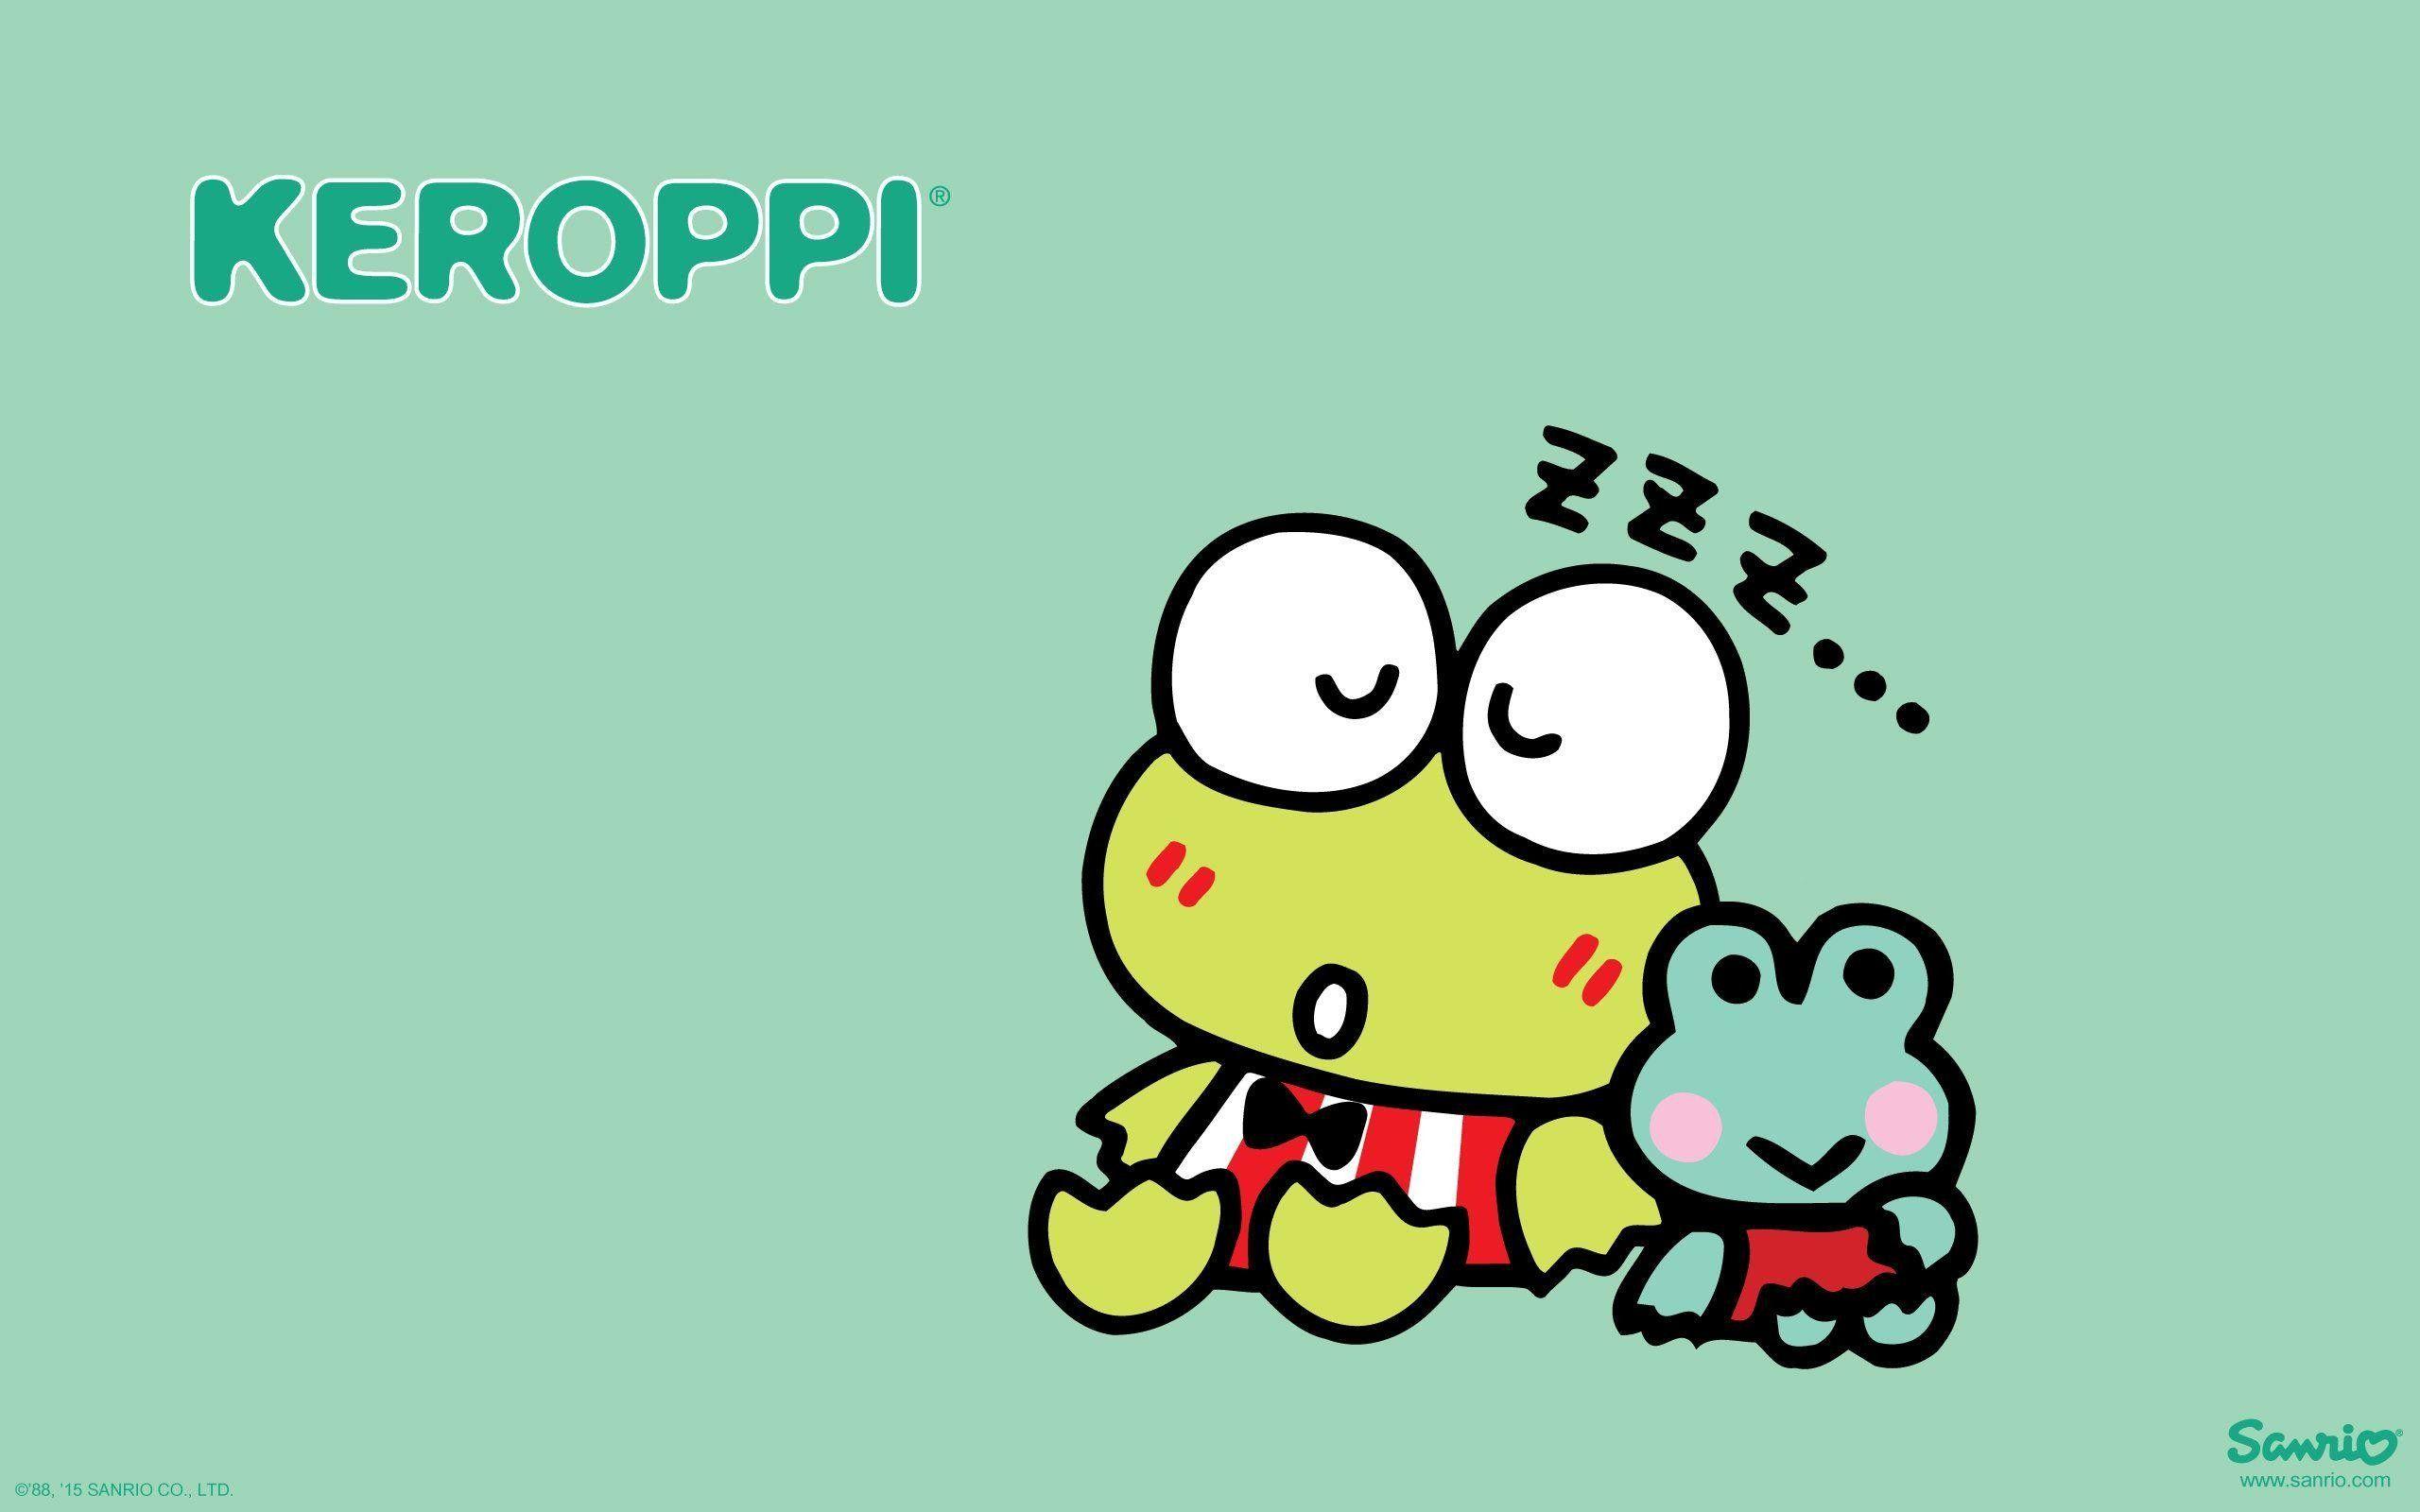 Frog Cartoon Background  Free image on Pixabay  Pixabay